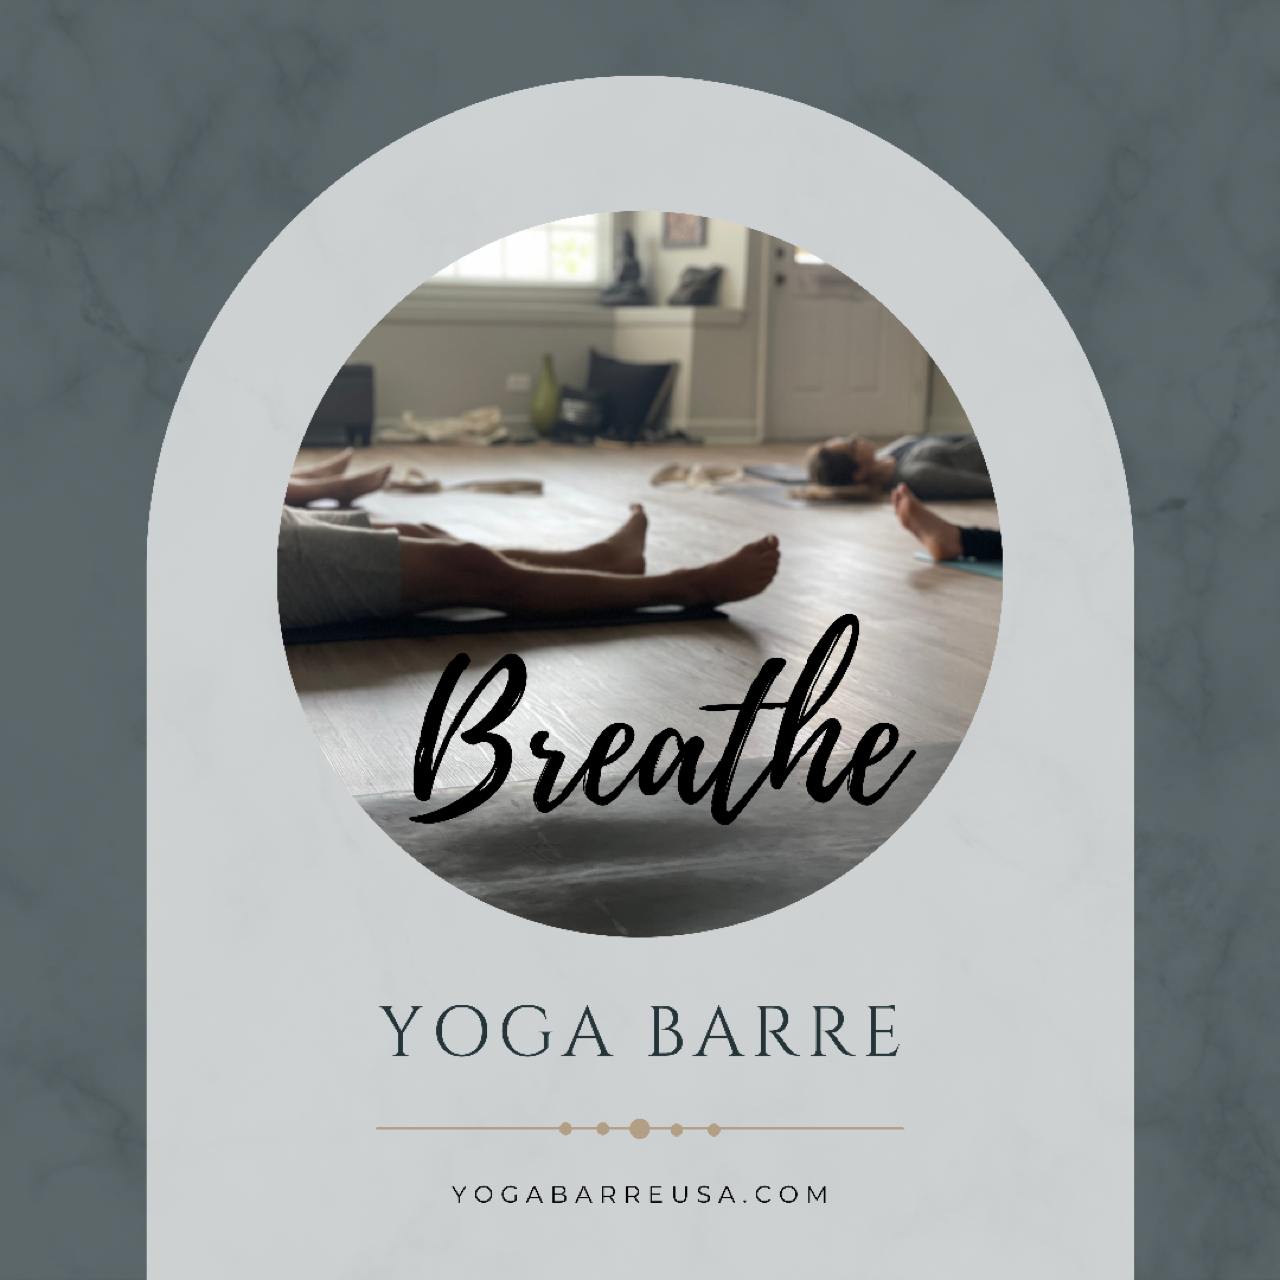 Yoga Barre - Yoga Classes, Barre & Pilates